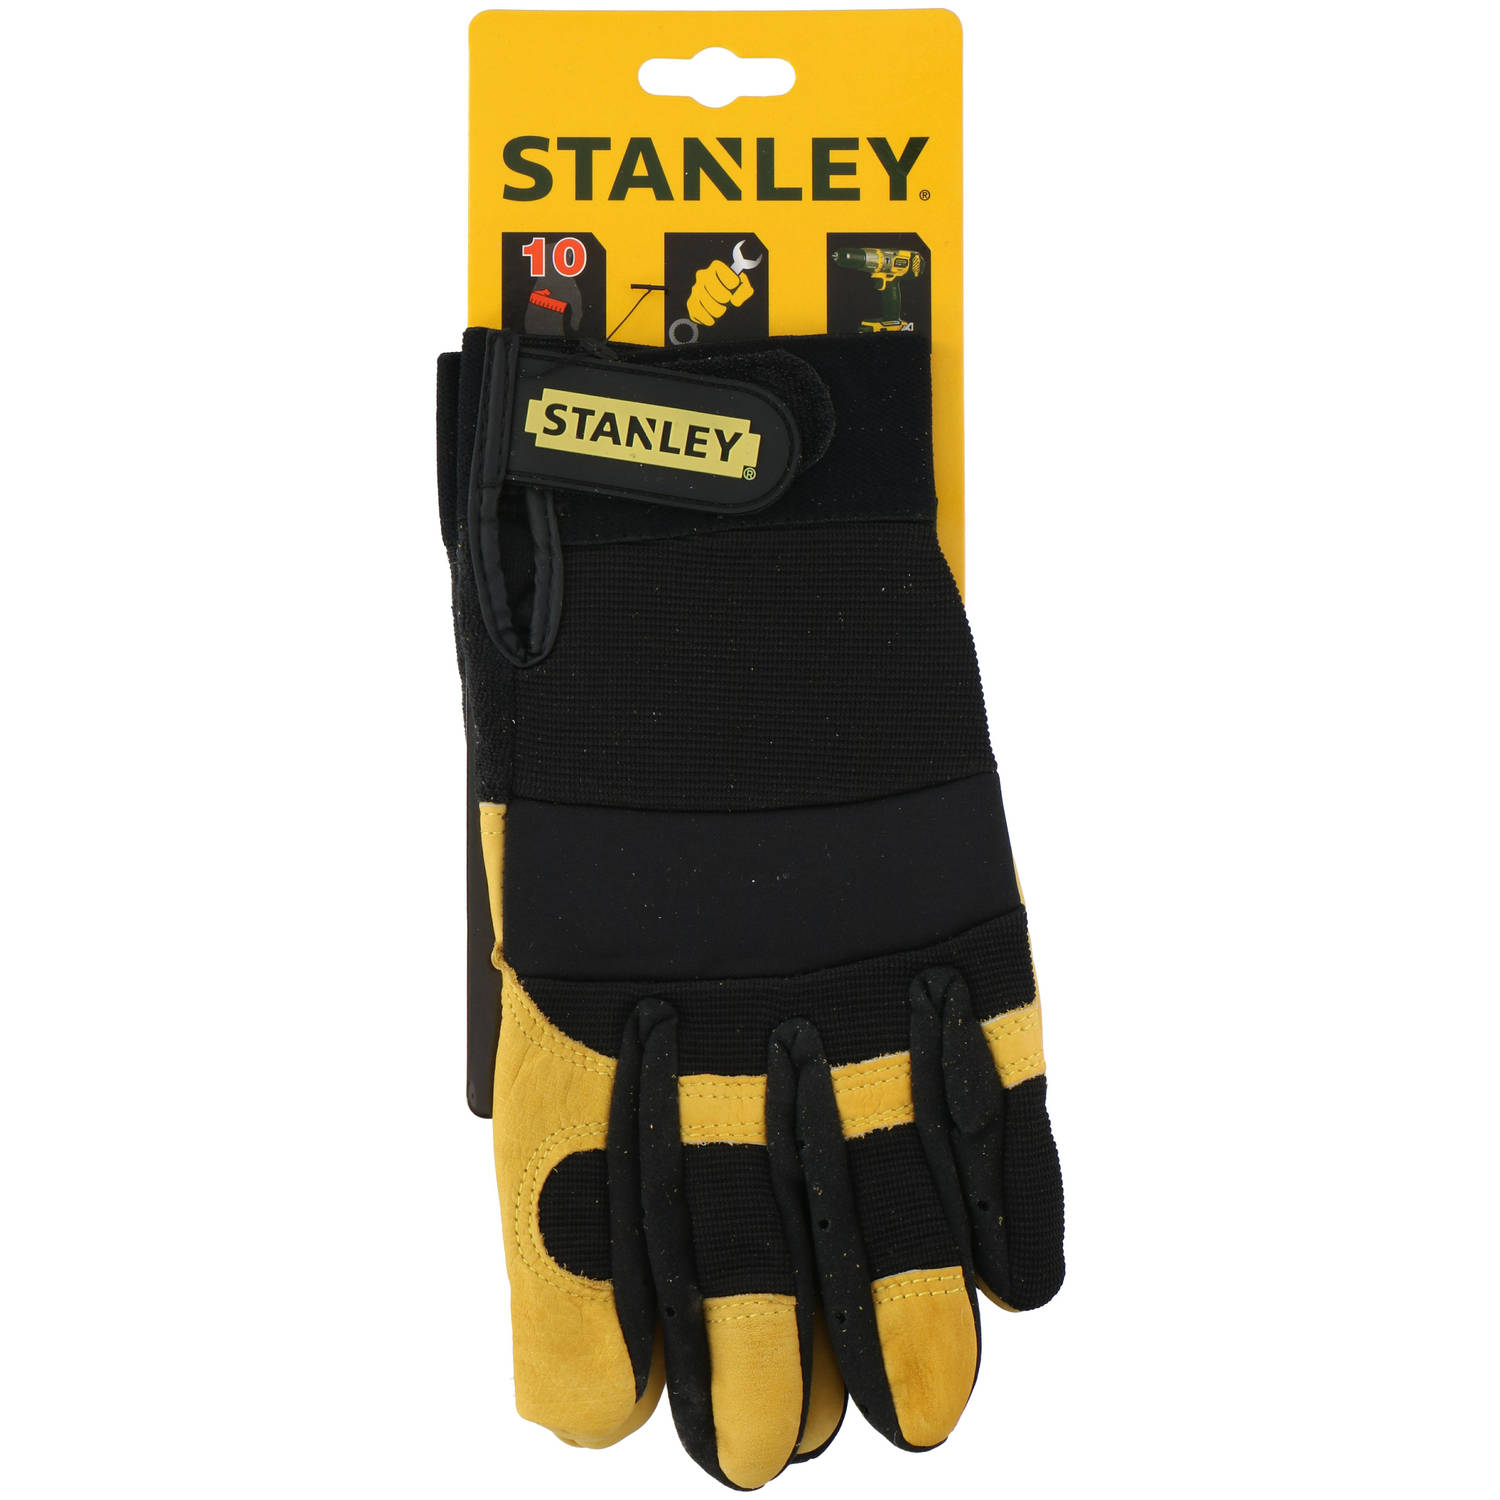 Stanley werkhandschoenen SY750L - leer - maat L